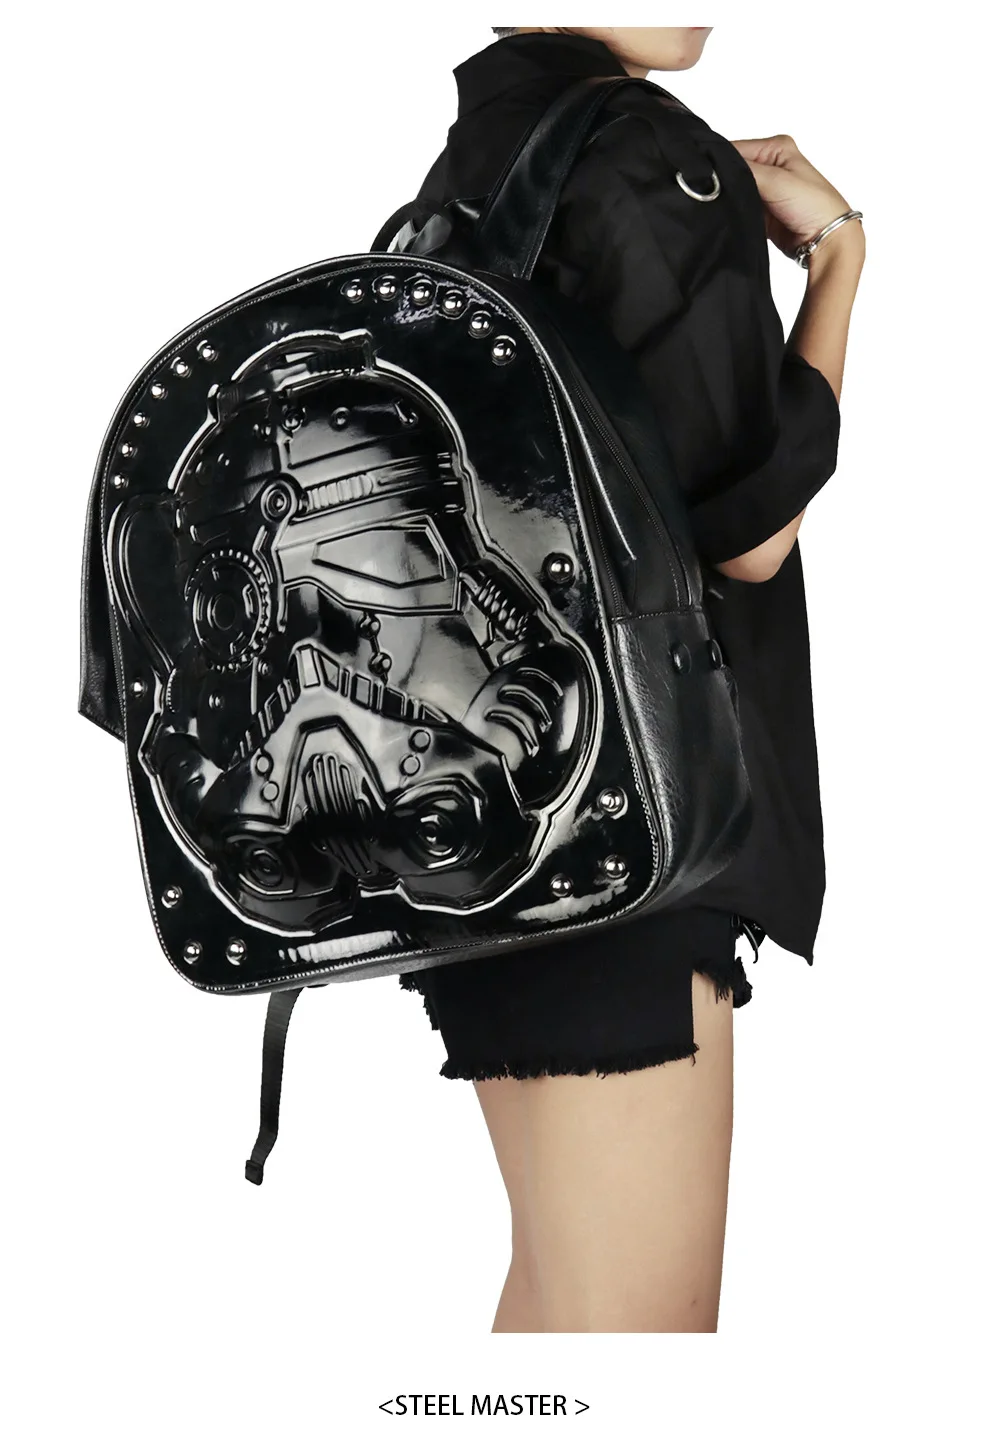 Новинка, черный рюкзак из искусственной кожи в стиле панк для мужчин и женщин, большой рюкзак для мотоциклистов, дорожная сумка, повседневный рюкзак в стиле стимпанк, школьная сумка